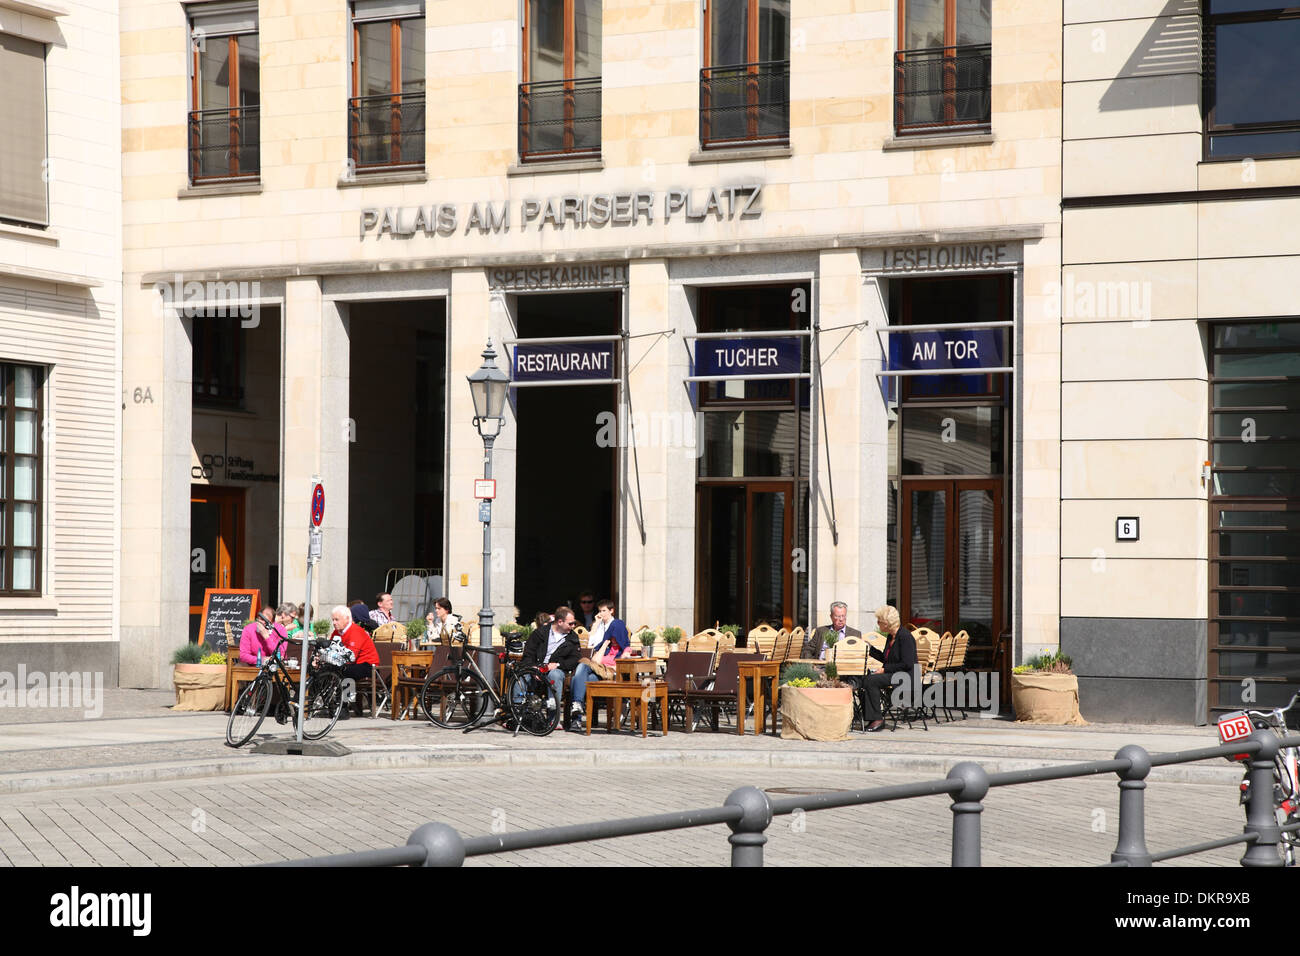 Berlin Mitte Pariser Platz Palais am Pariser Platz Restaurant Tucher am Tor  Stock Photo - Alamy